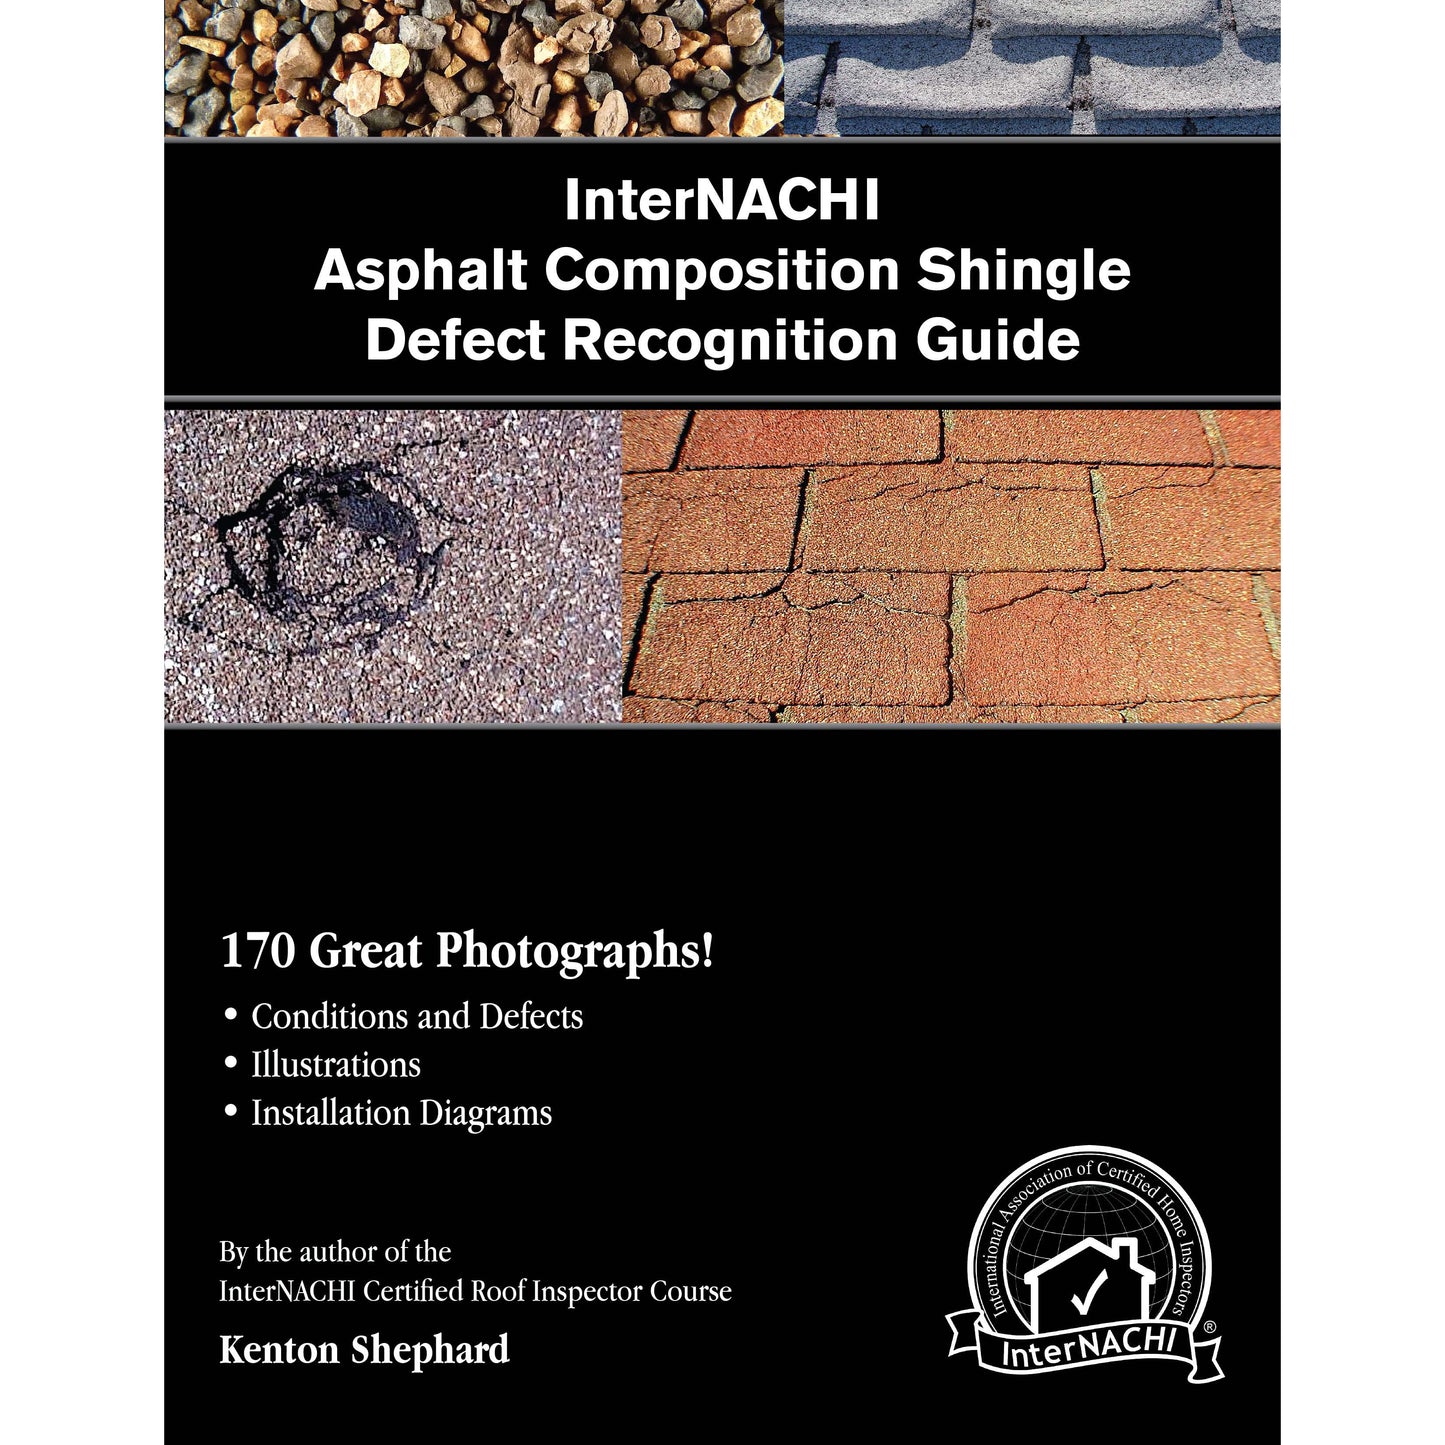 InterNACHI Asphalt Composition Shingle Defect Recognition Guide